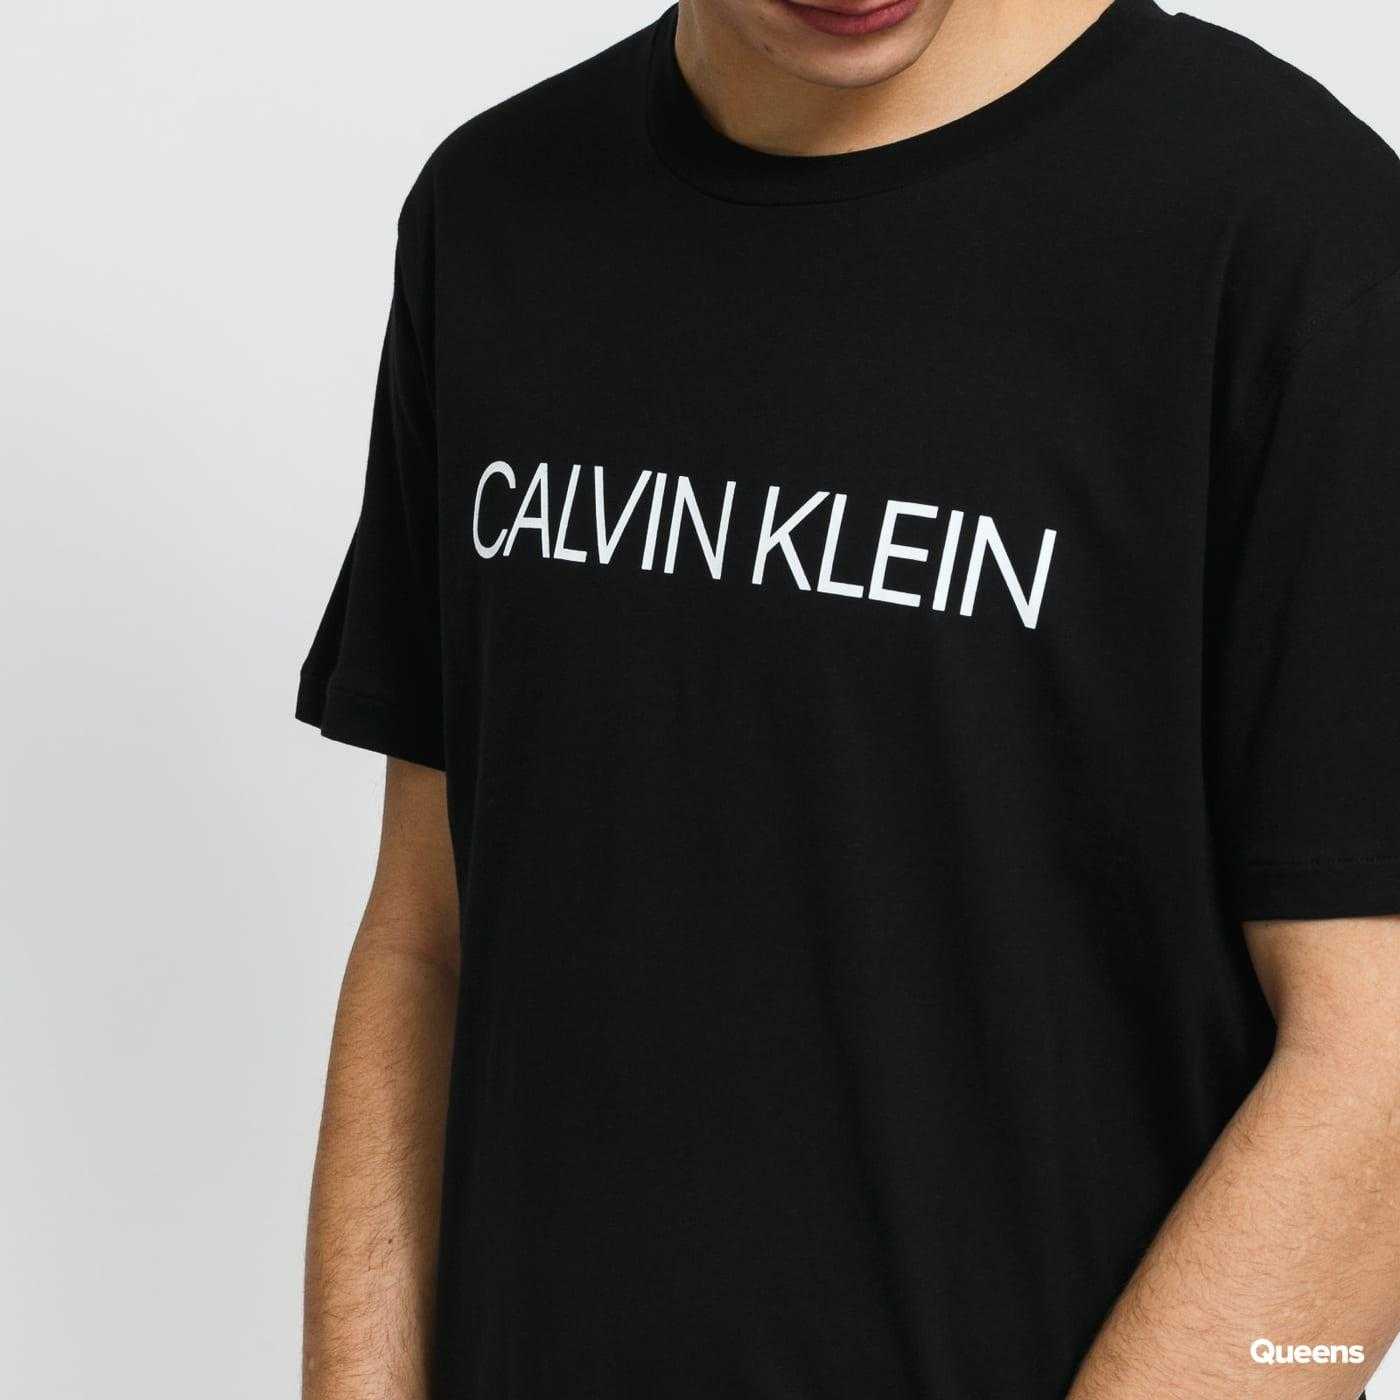 Camiseta Caballero Calvin Klein Bobby TALLAS: s, m, l, xl; COLOR: blanco, negro, azul eléctrico  - HOMBRE  - PEPI GUERRA